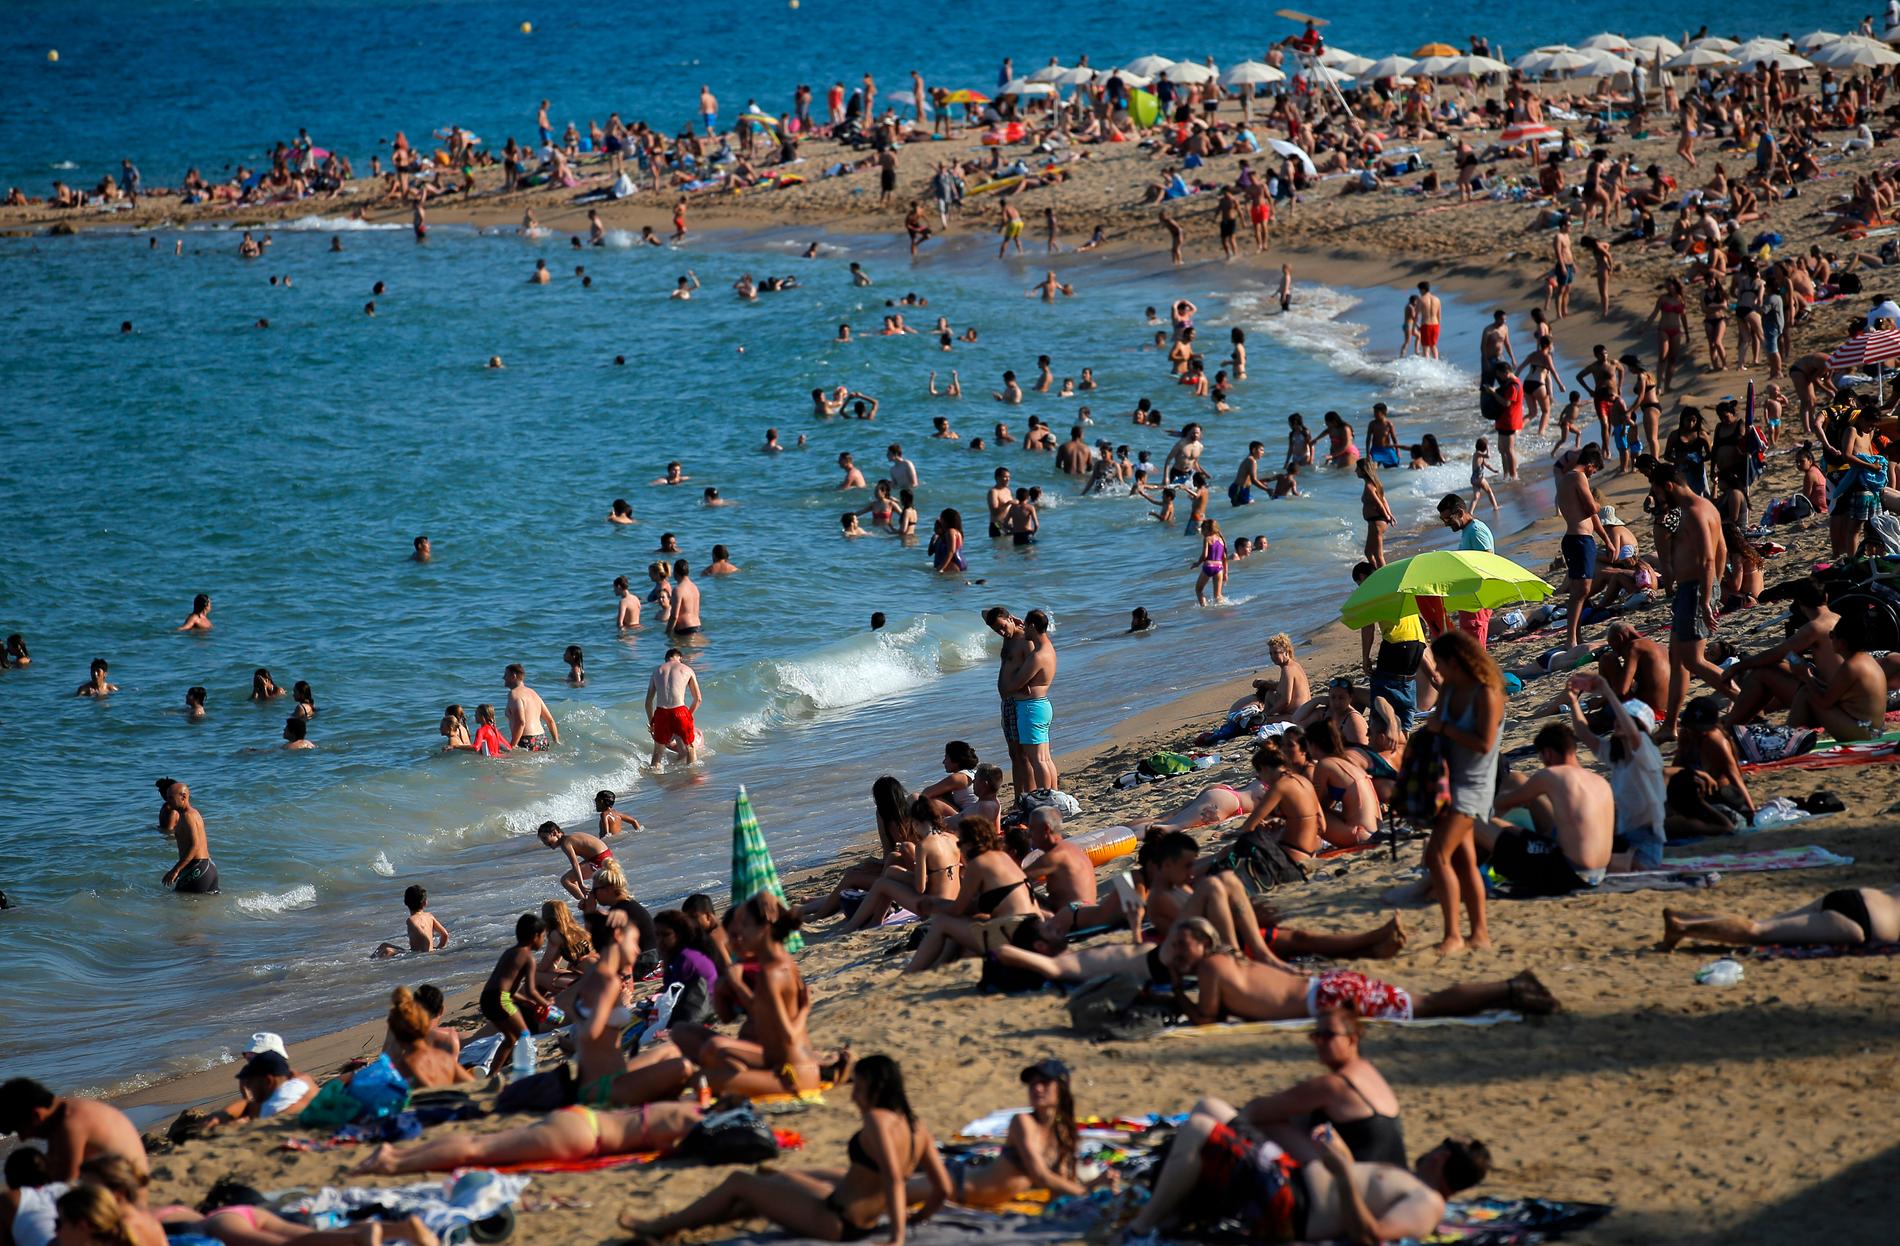 En dag på en strand i Spanien är inte lika varm som en dag i Överkalix just nu.